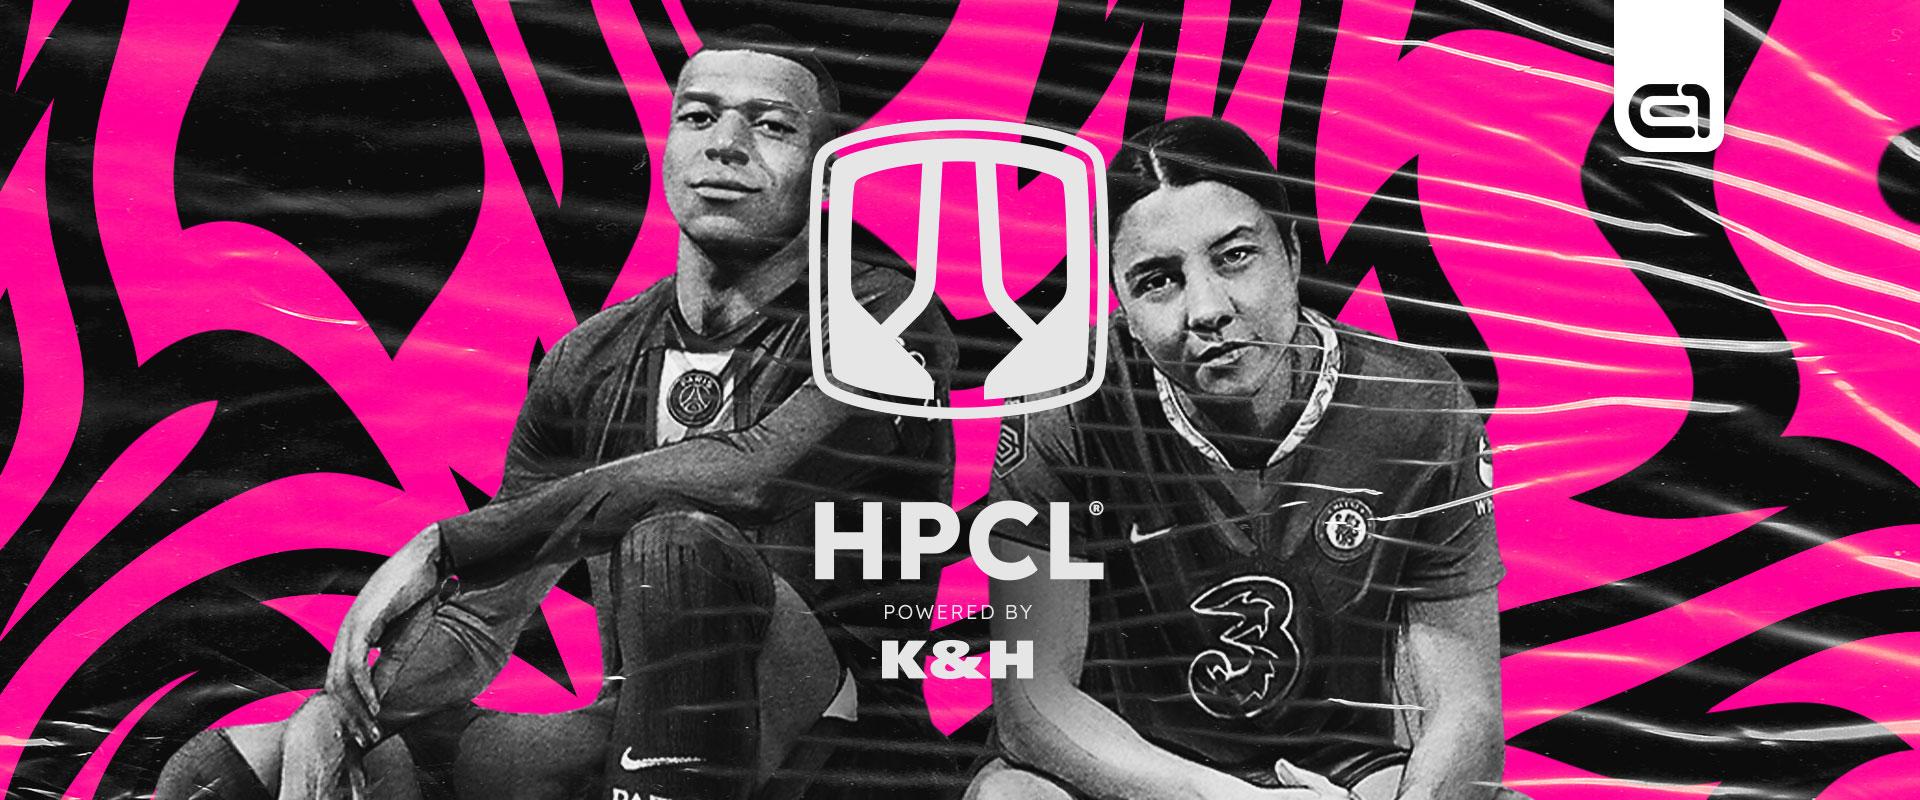 HPCL powered by K&H: a hétvégi játéknap teljesen átírhatja az erőviszonyokat